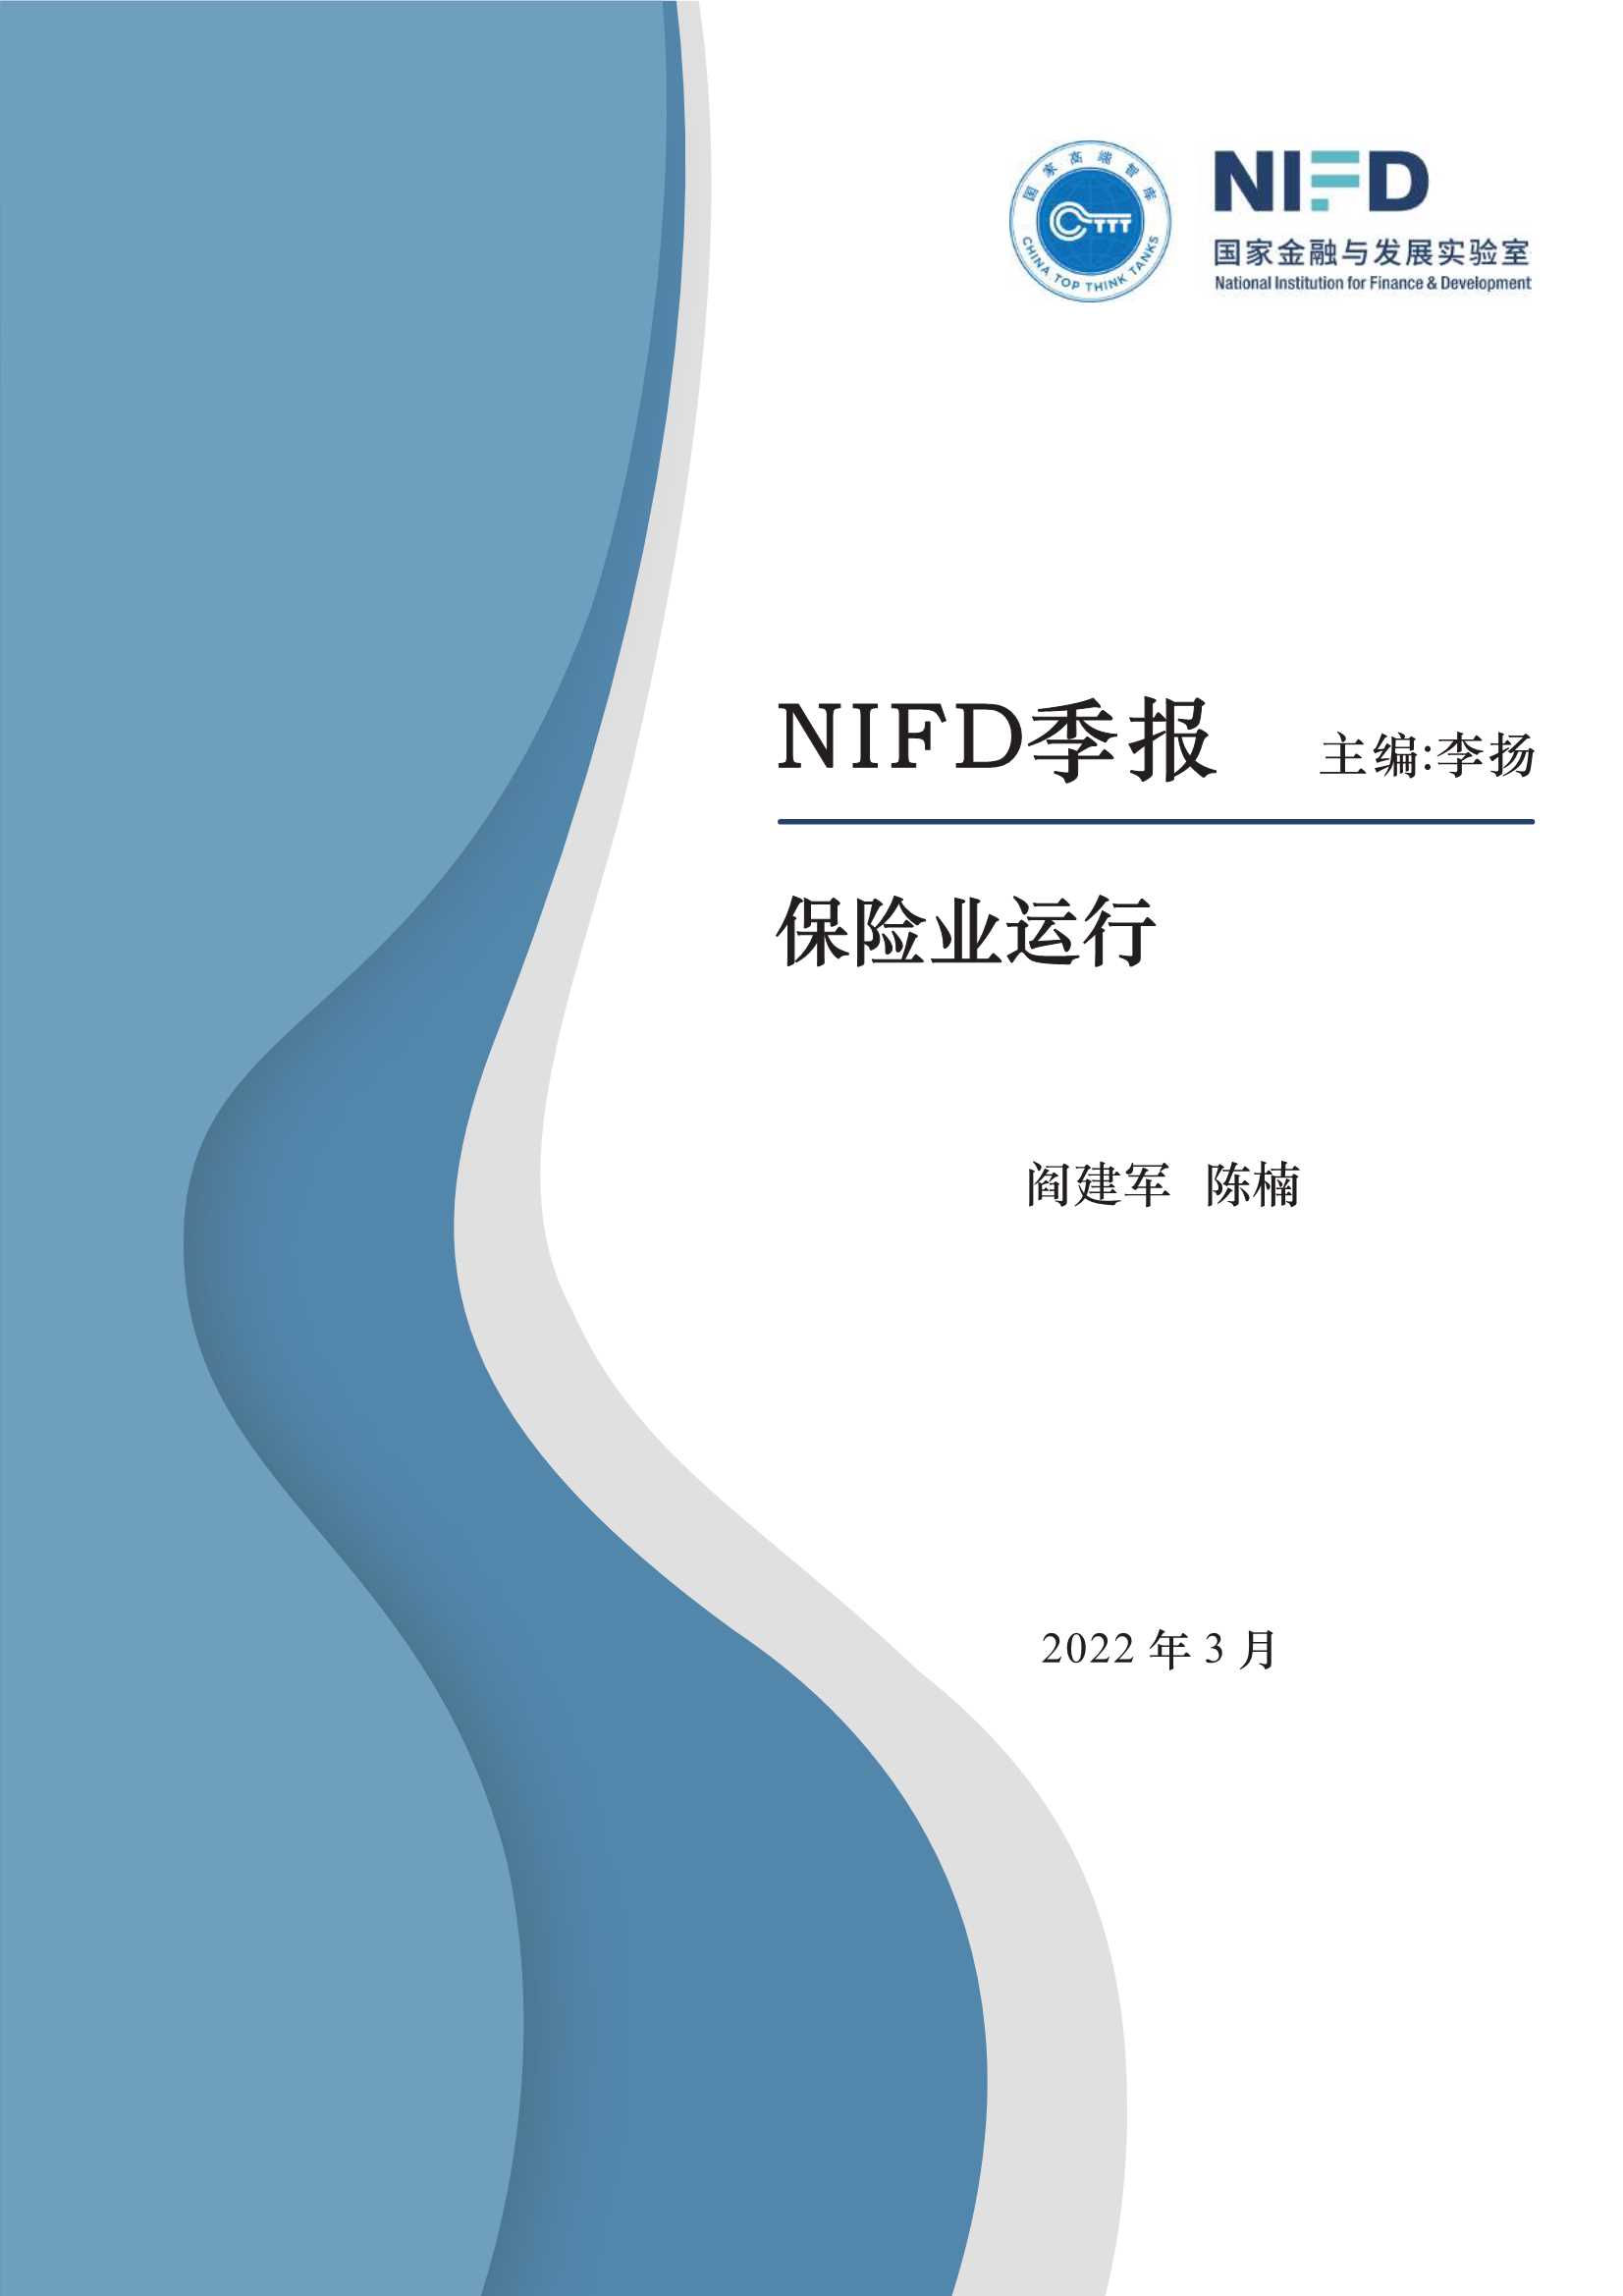 NIFD-向高质量发展转型——2021年保险业回顾与2022年展望-2022.03-15页